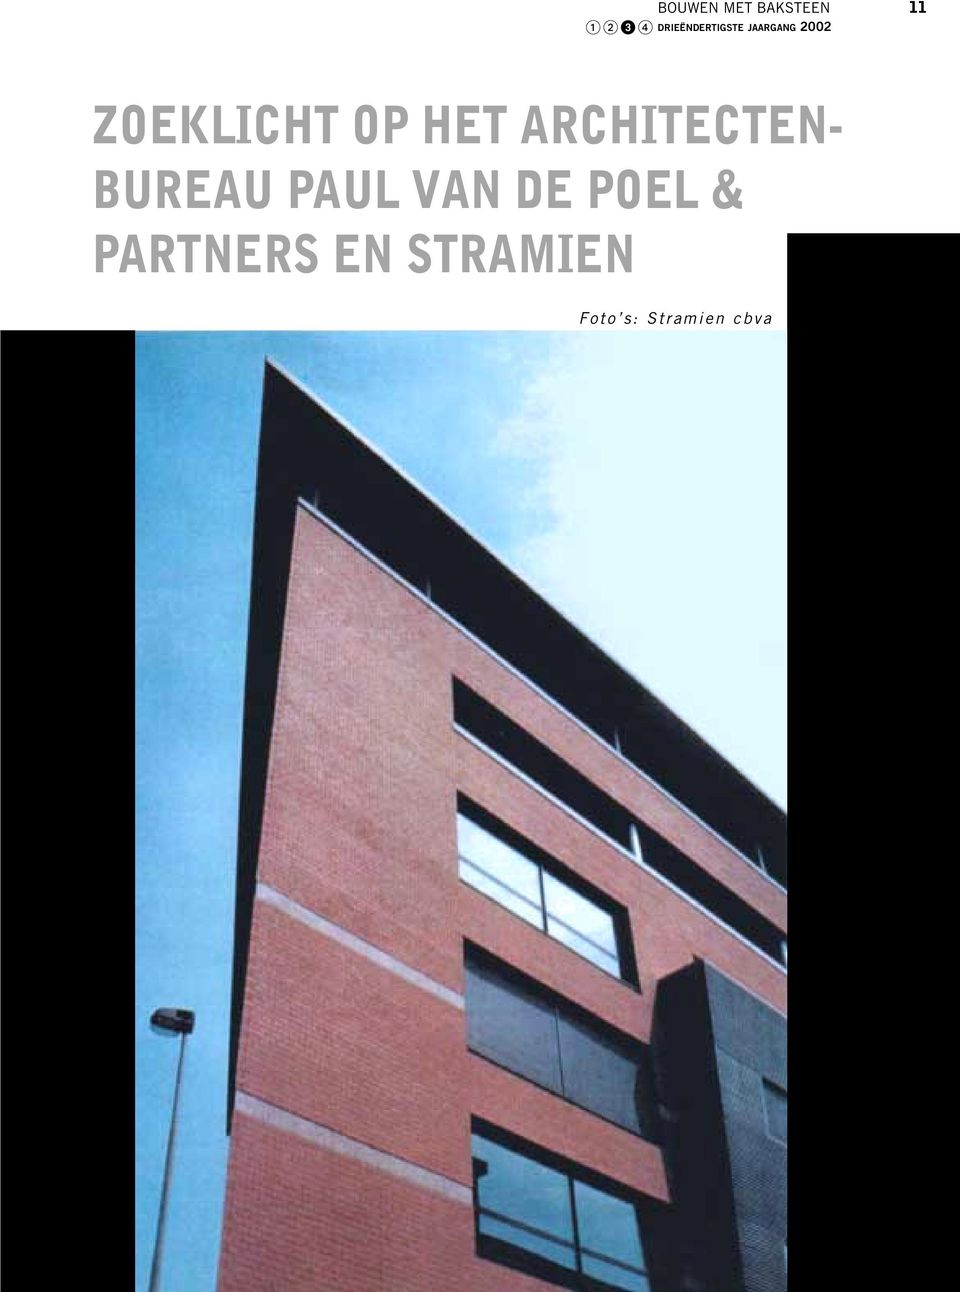 ARCHITECTEN- BUREAU PAUL VAN DE POEL